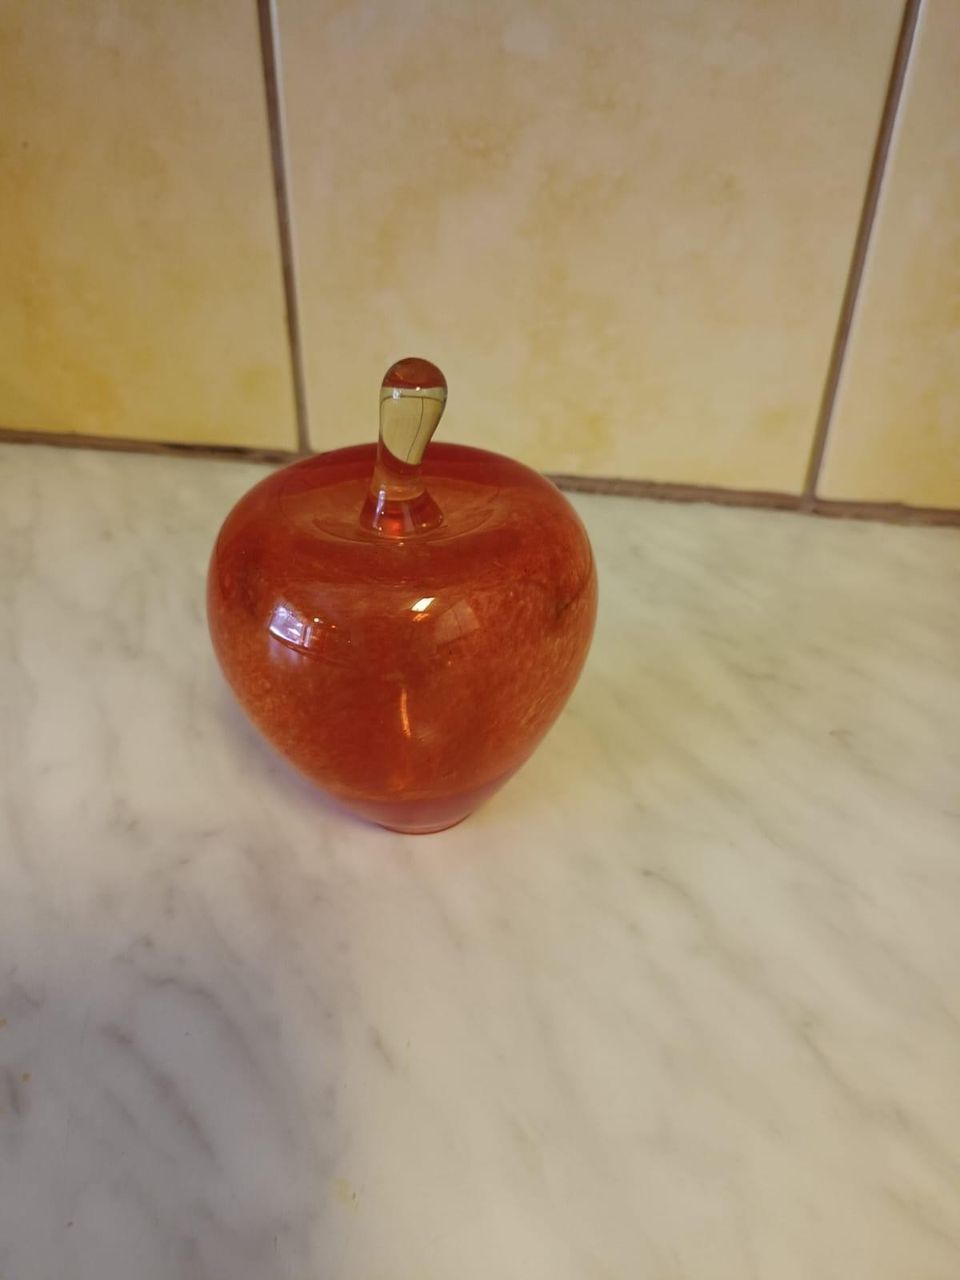 Punainen omena